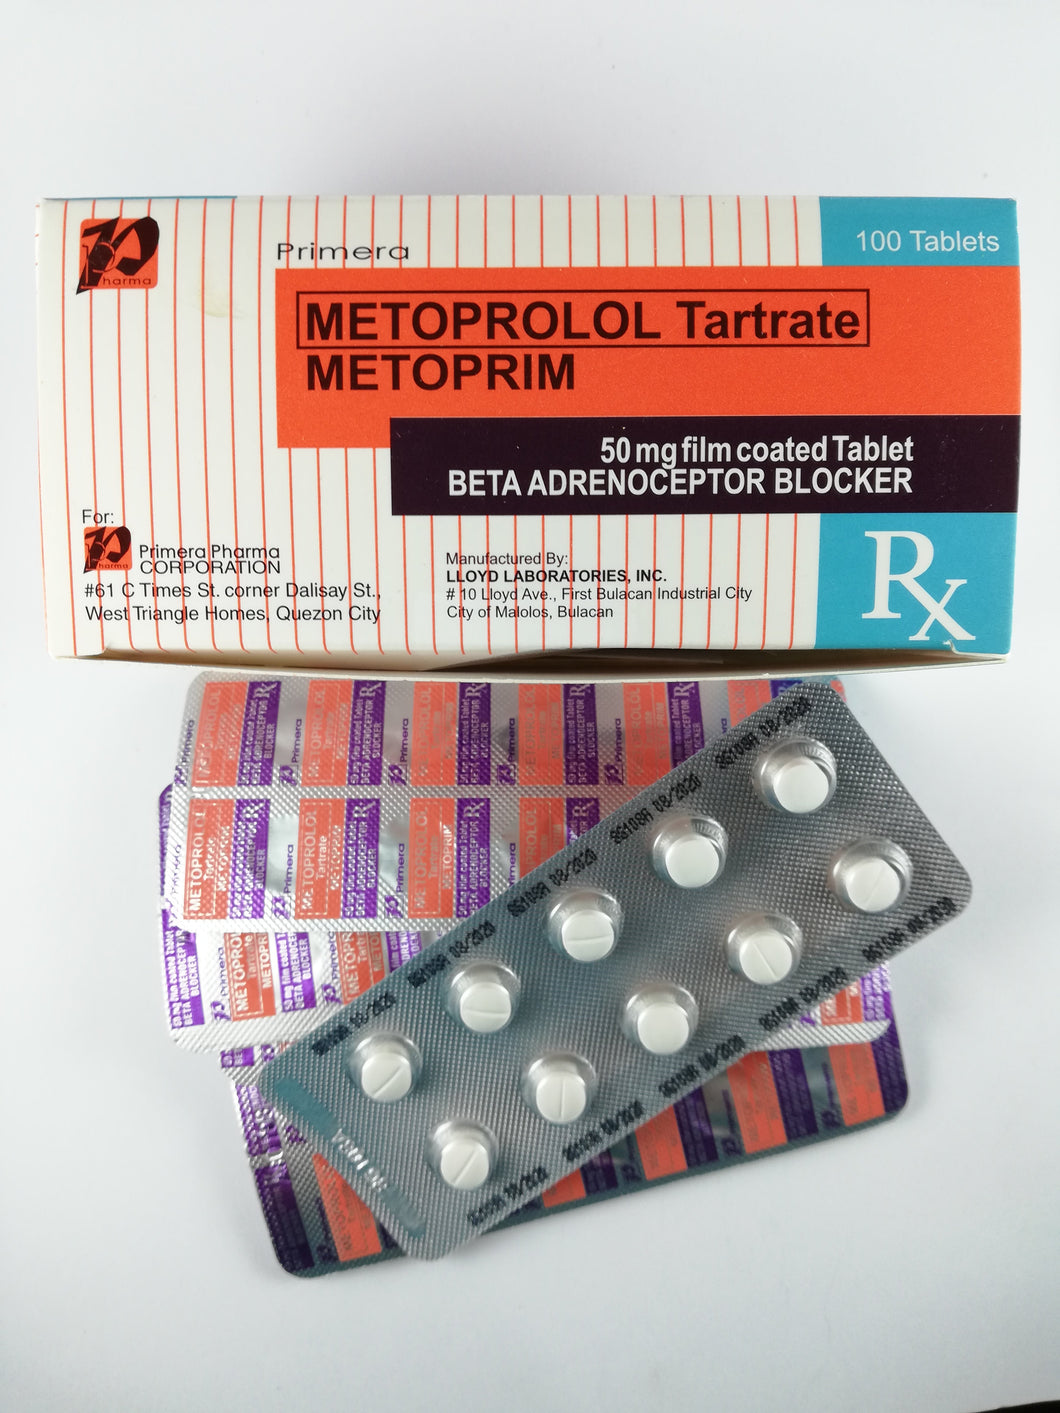 Metoprim (Metoprolol Tartrate)